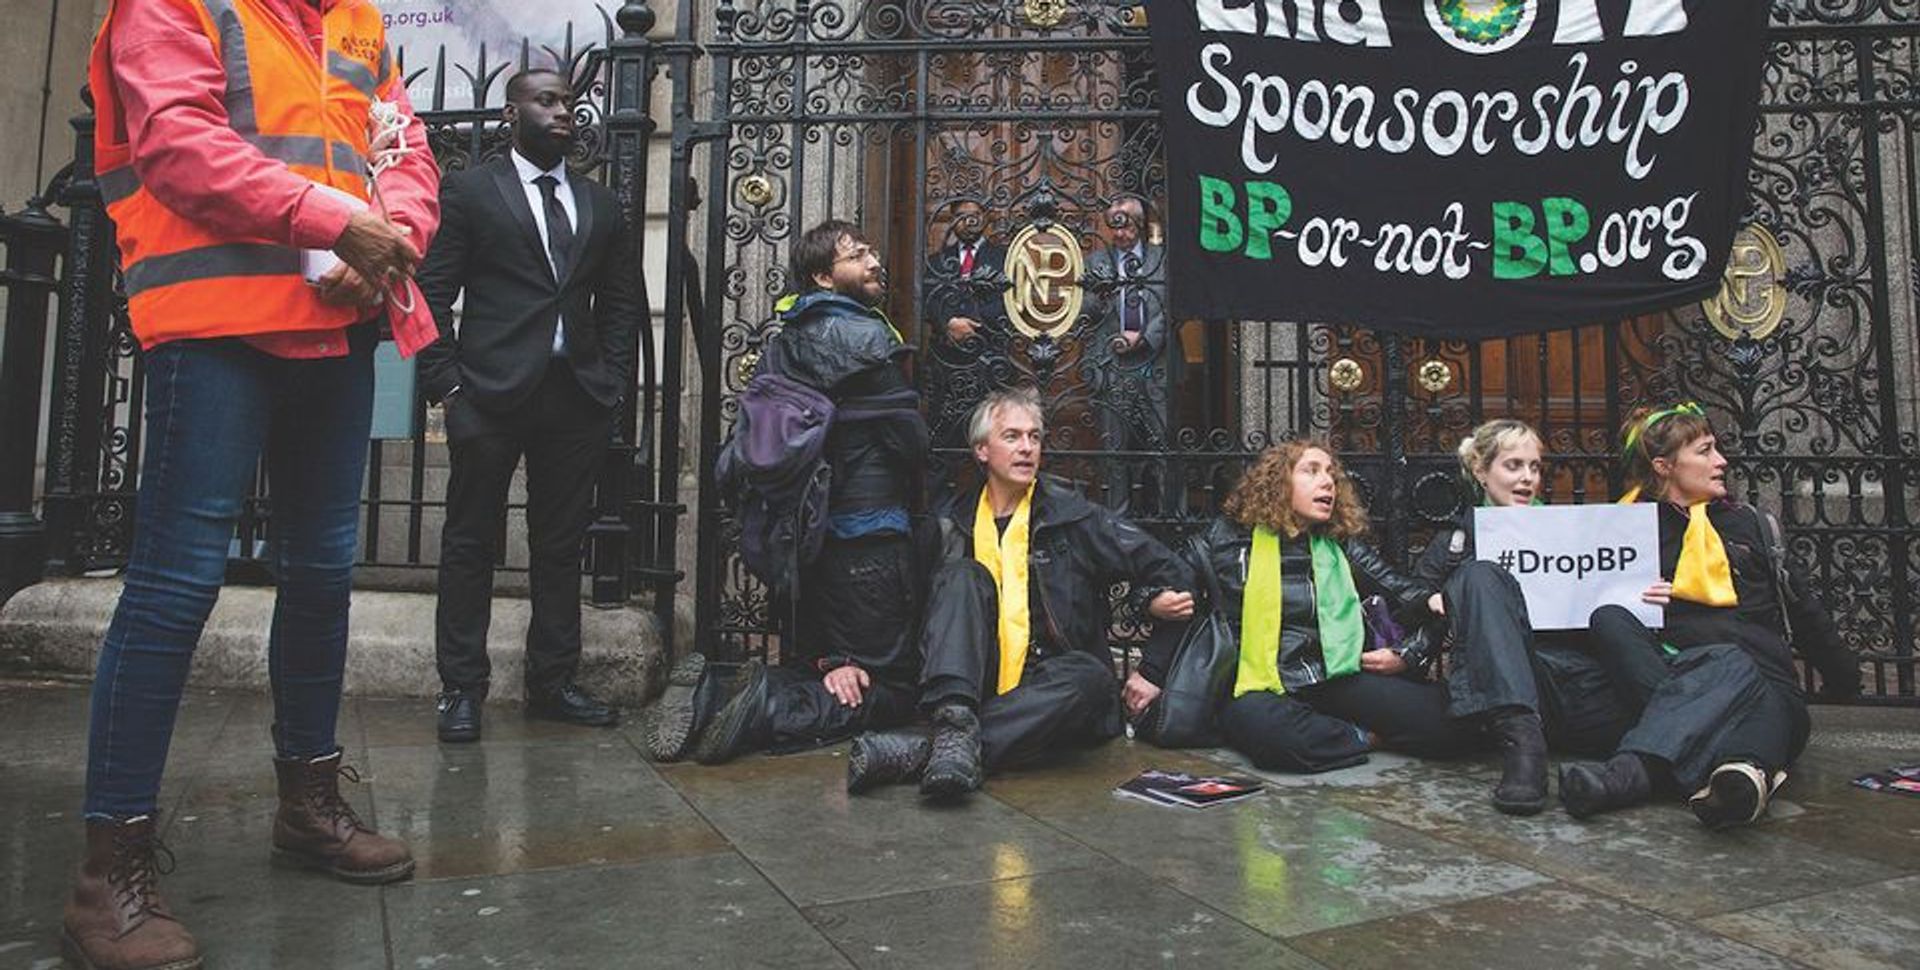 Les manifestants devant la National Portrait Gallery, à Londres, n’ont pas réussi à convaincre le directeur de mettre fin au parrainage du géant pétrolier BP. © Mark Kerrison/Alamy